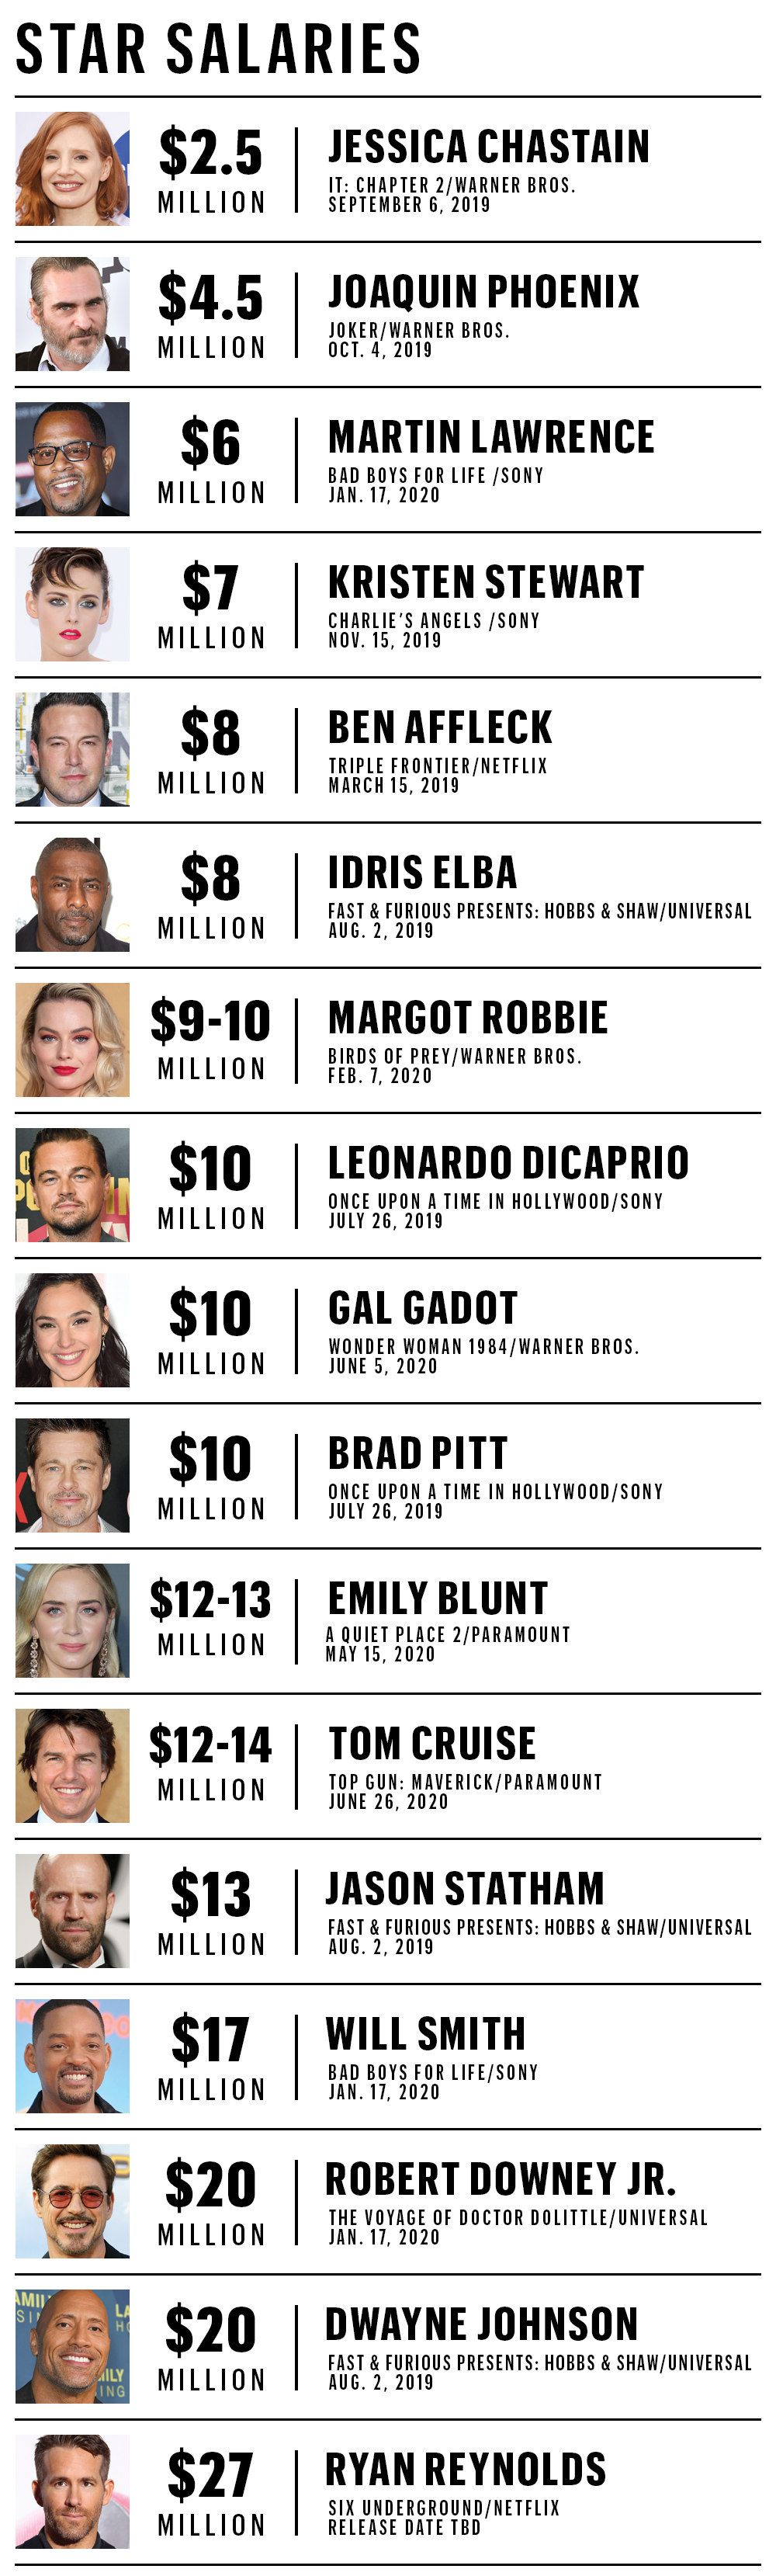 دستمزد تعدادی از بازیگران مشهور هالیوود در سال ۲۰۱۹ مشخص شد